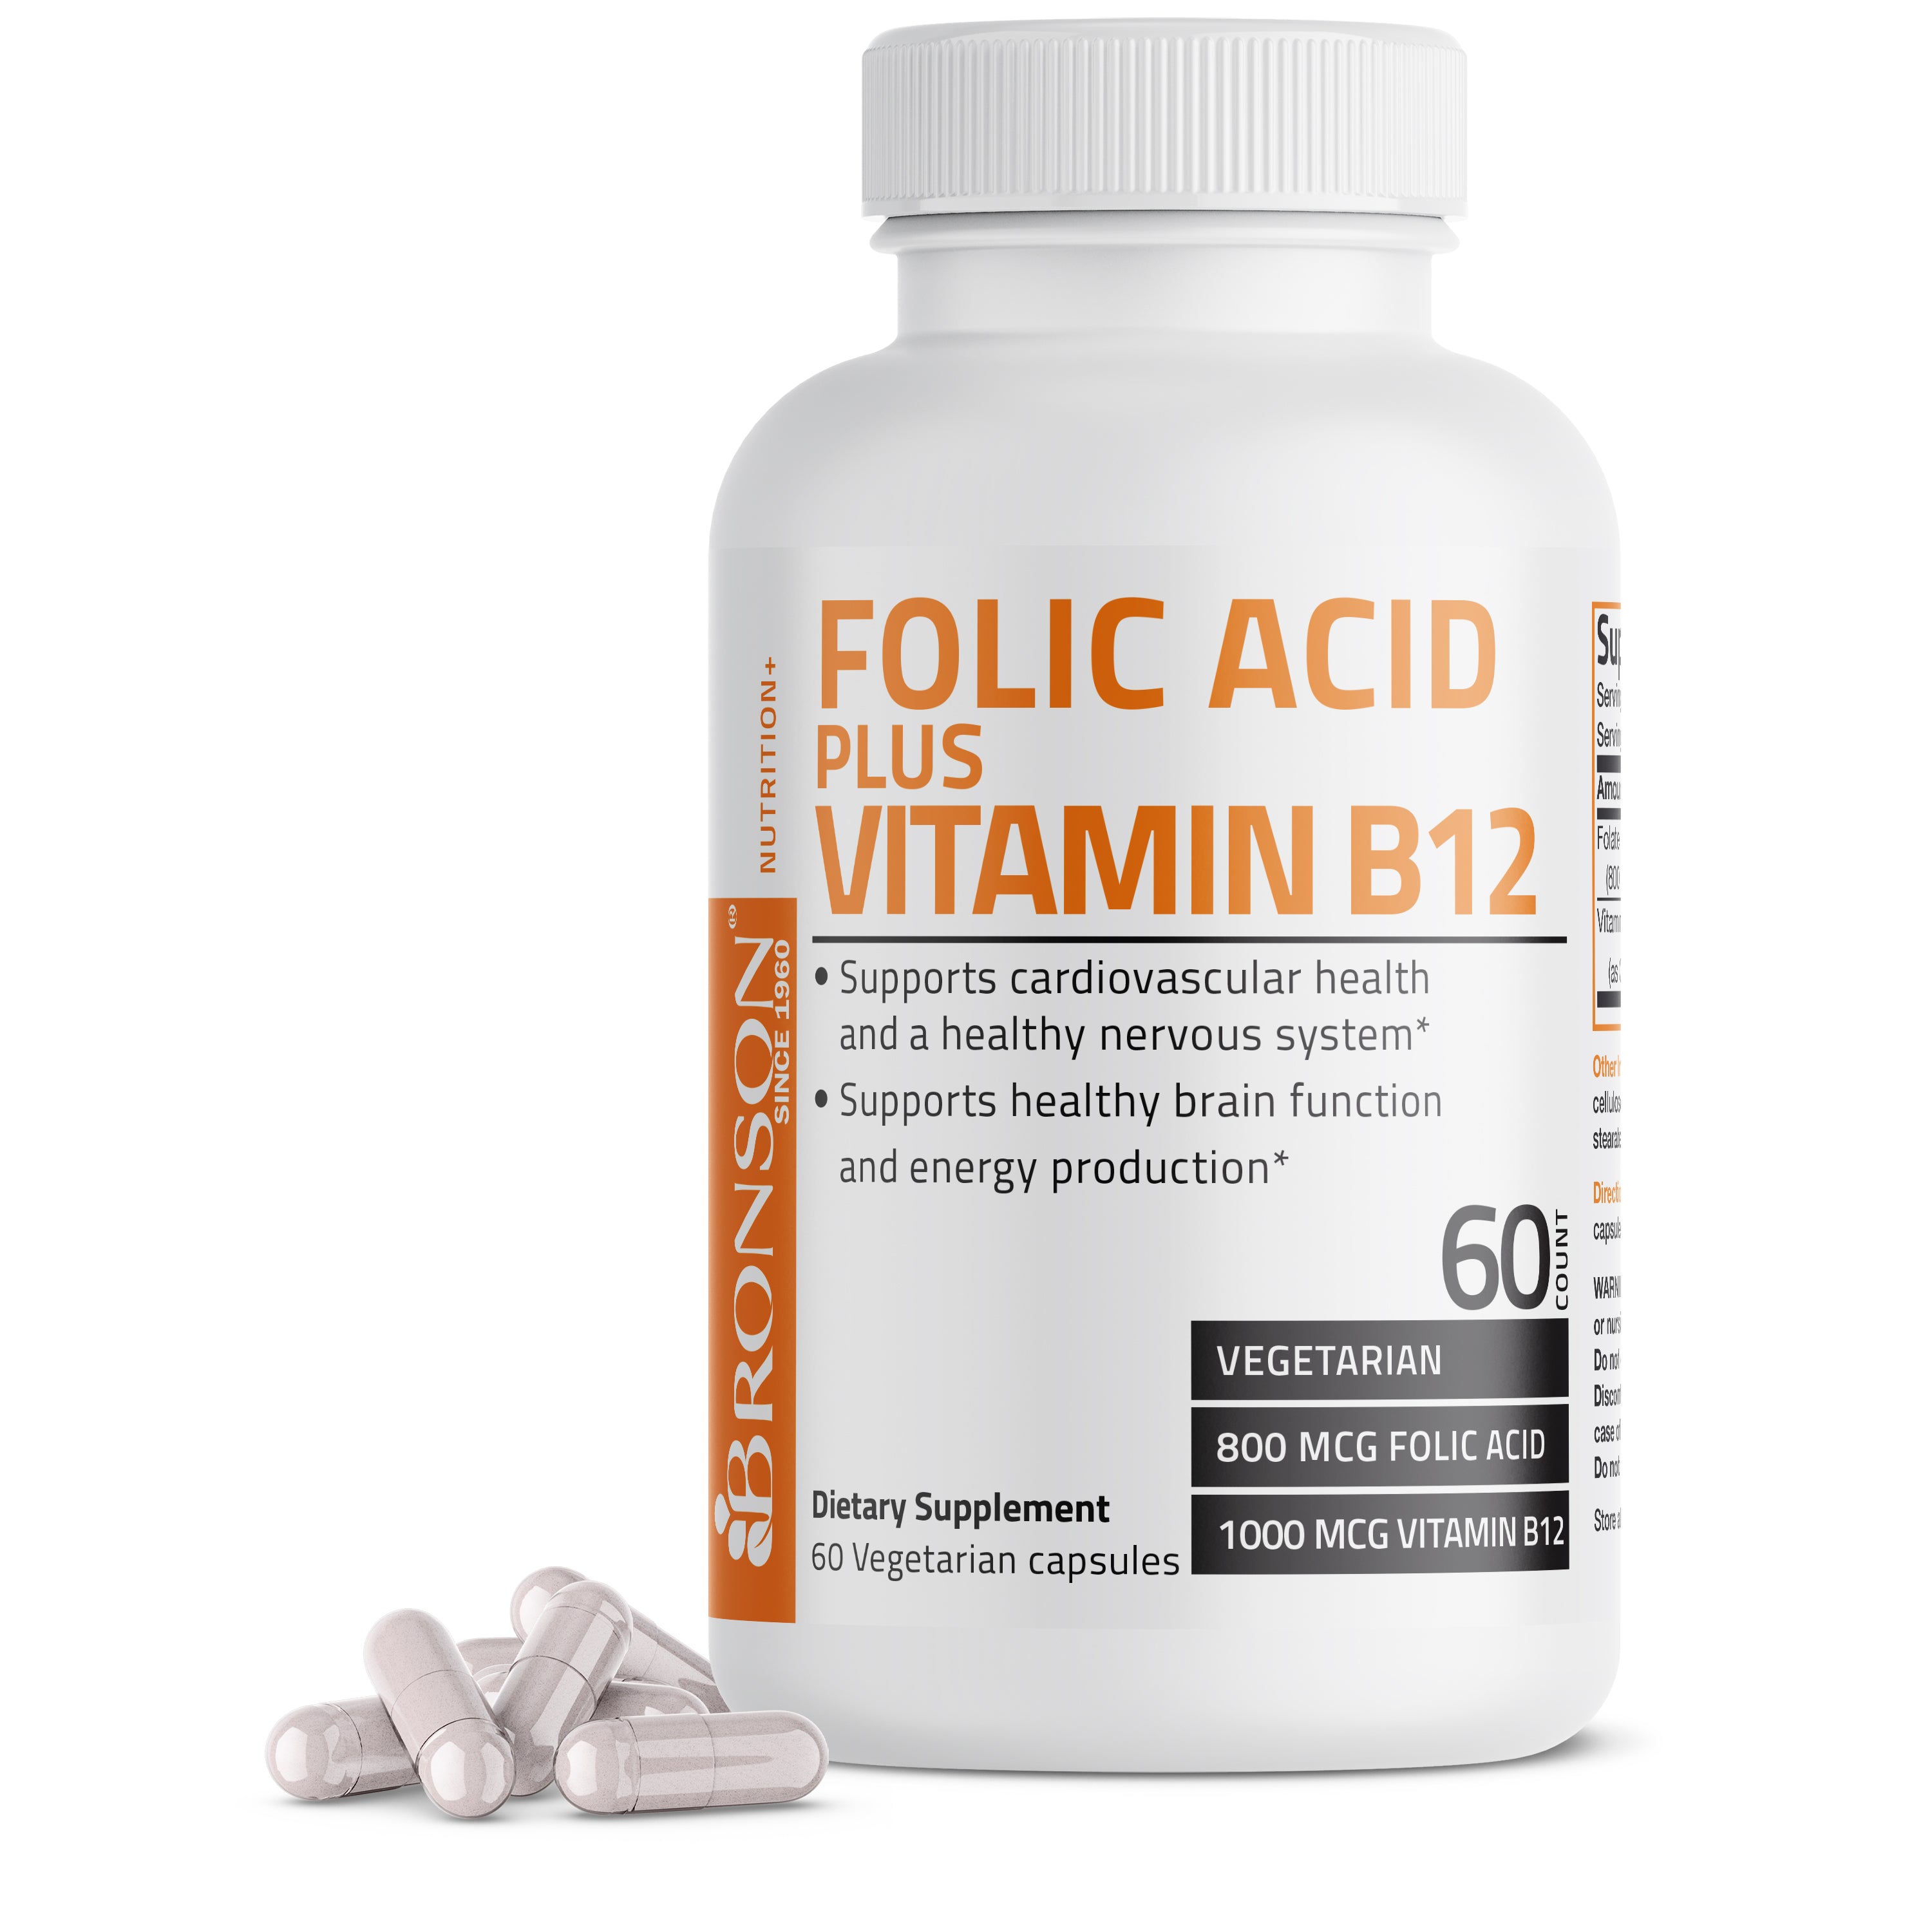 Folic Acid Plus Vitamin B12 - 60 Vegetarian Capsules view 1 of 6